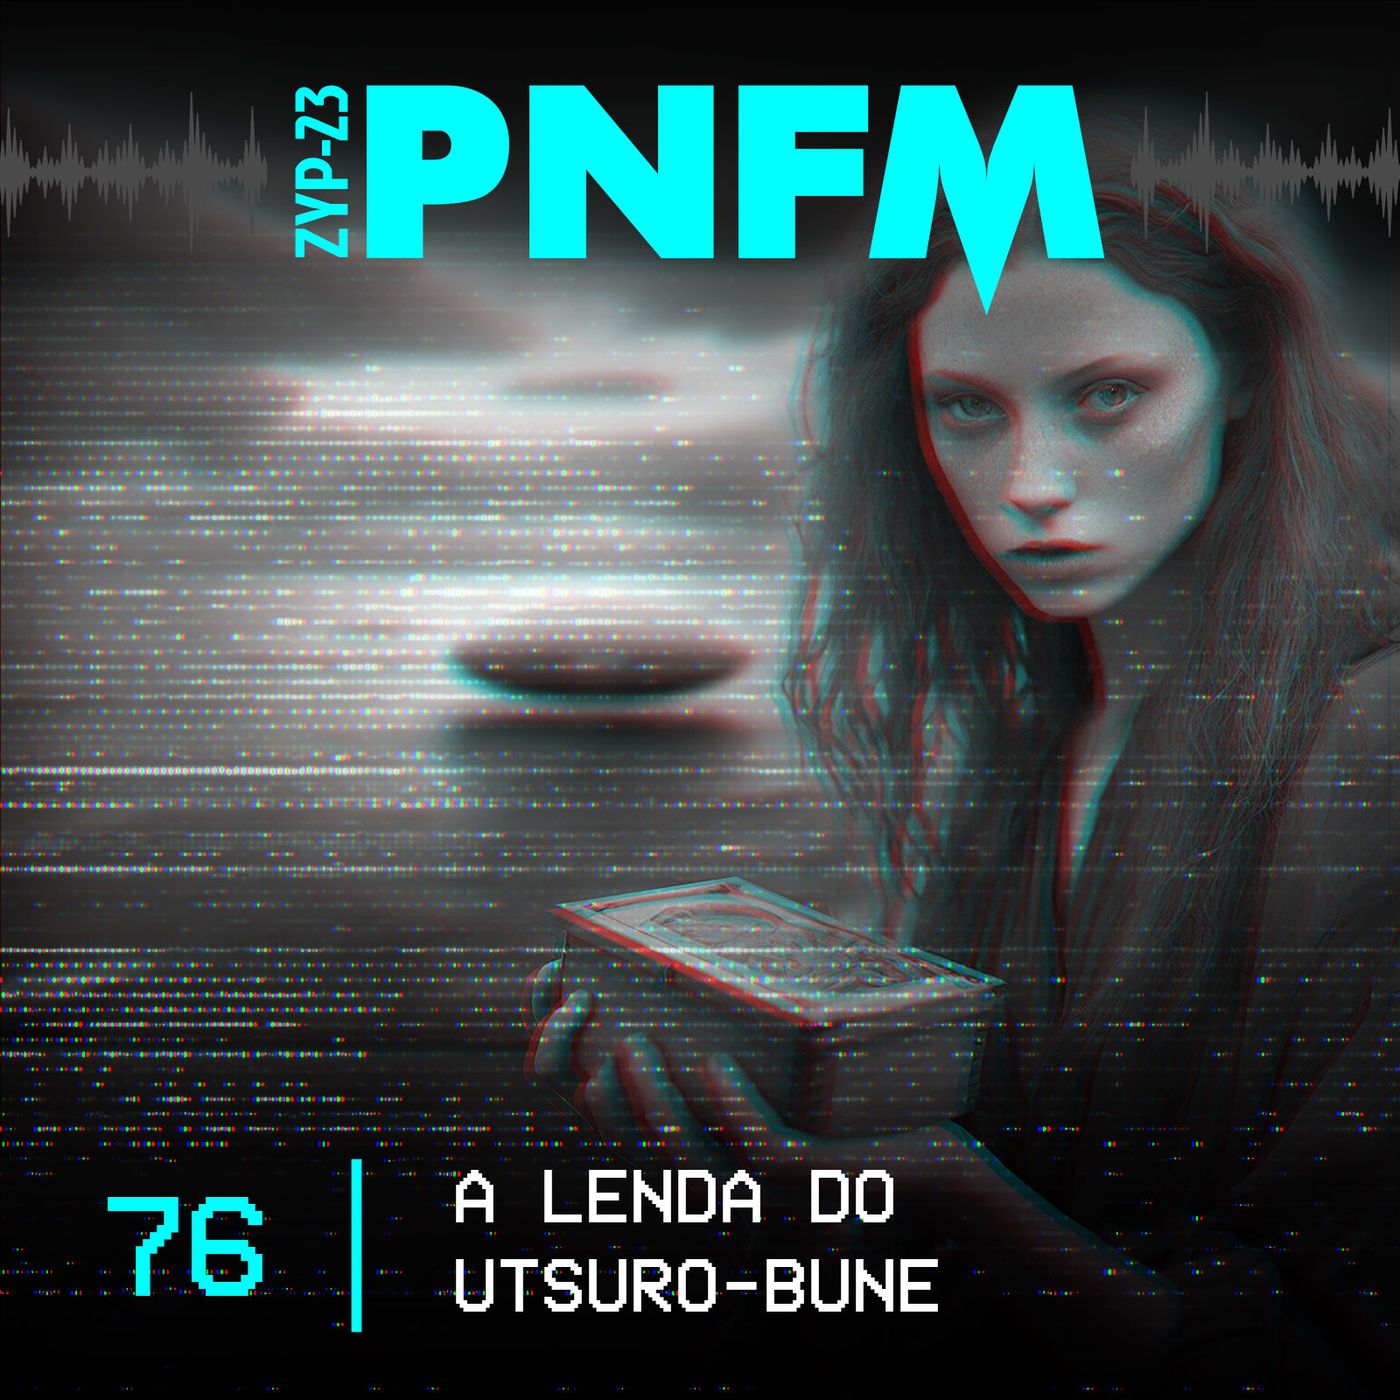 PNFM - EP076 - A Lenda do Utsurobune